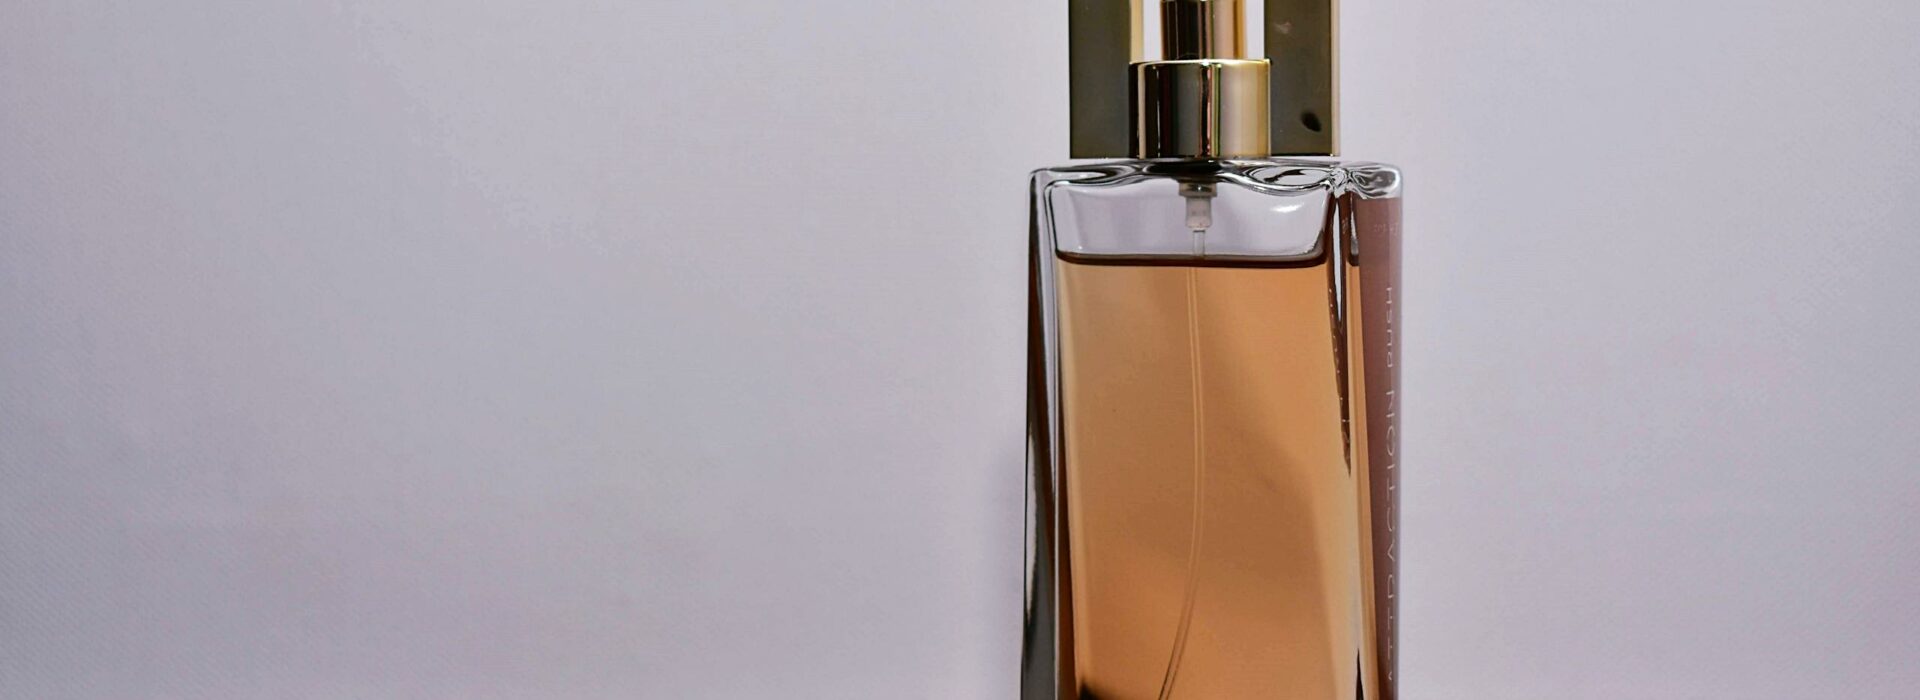 Close-Up Photo of Perfume Bottle